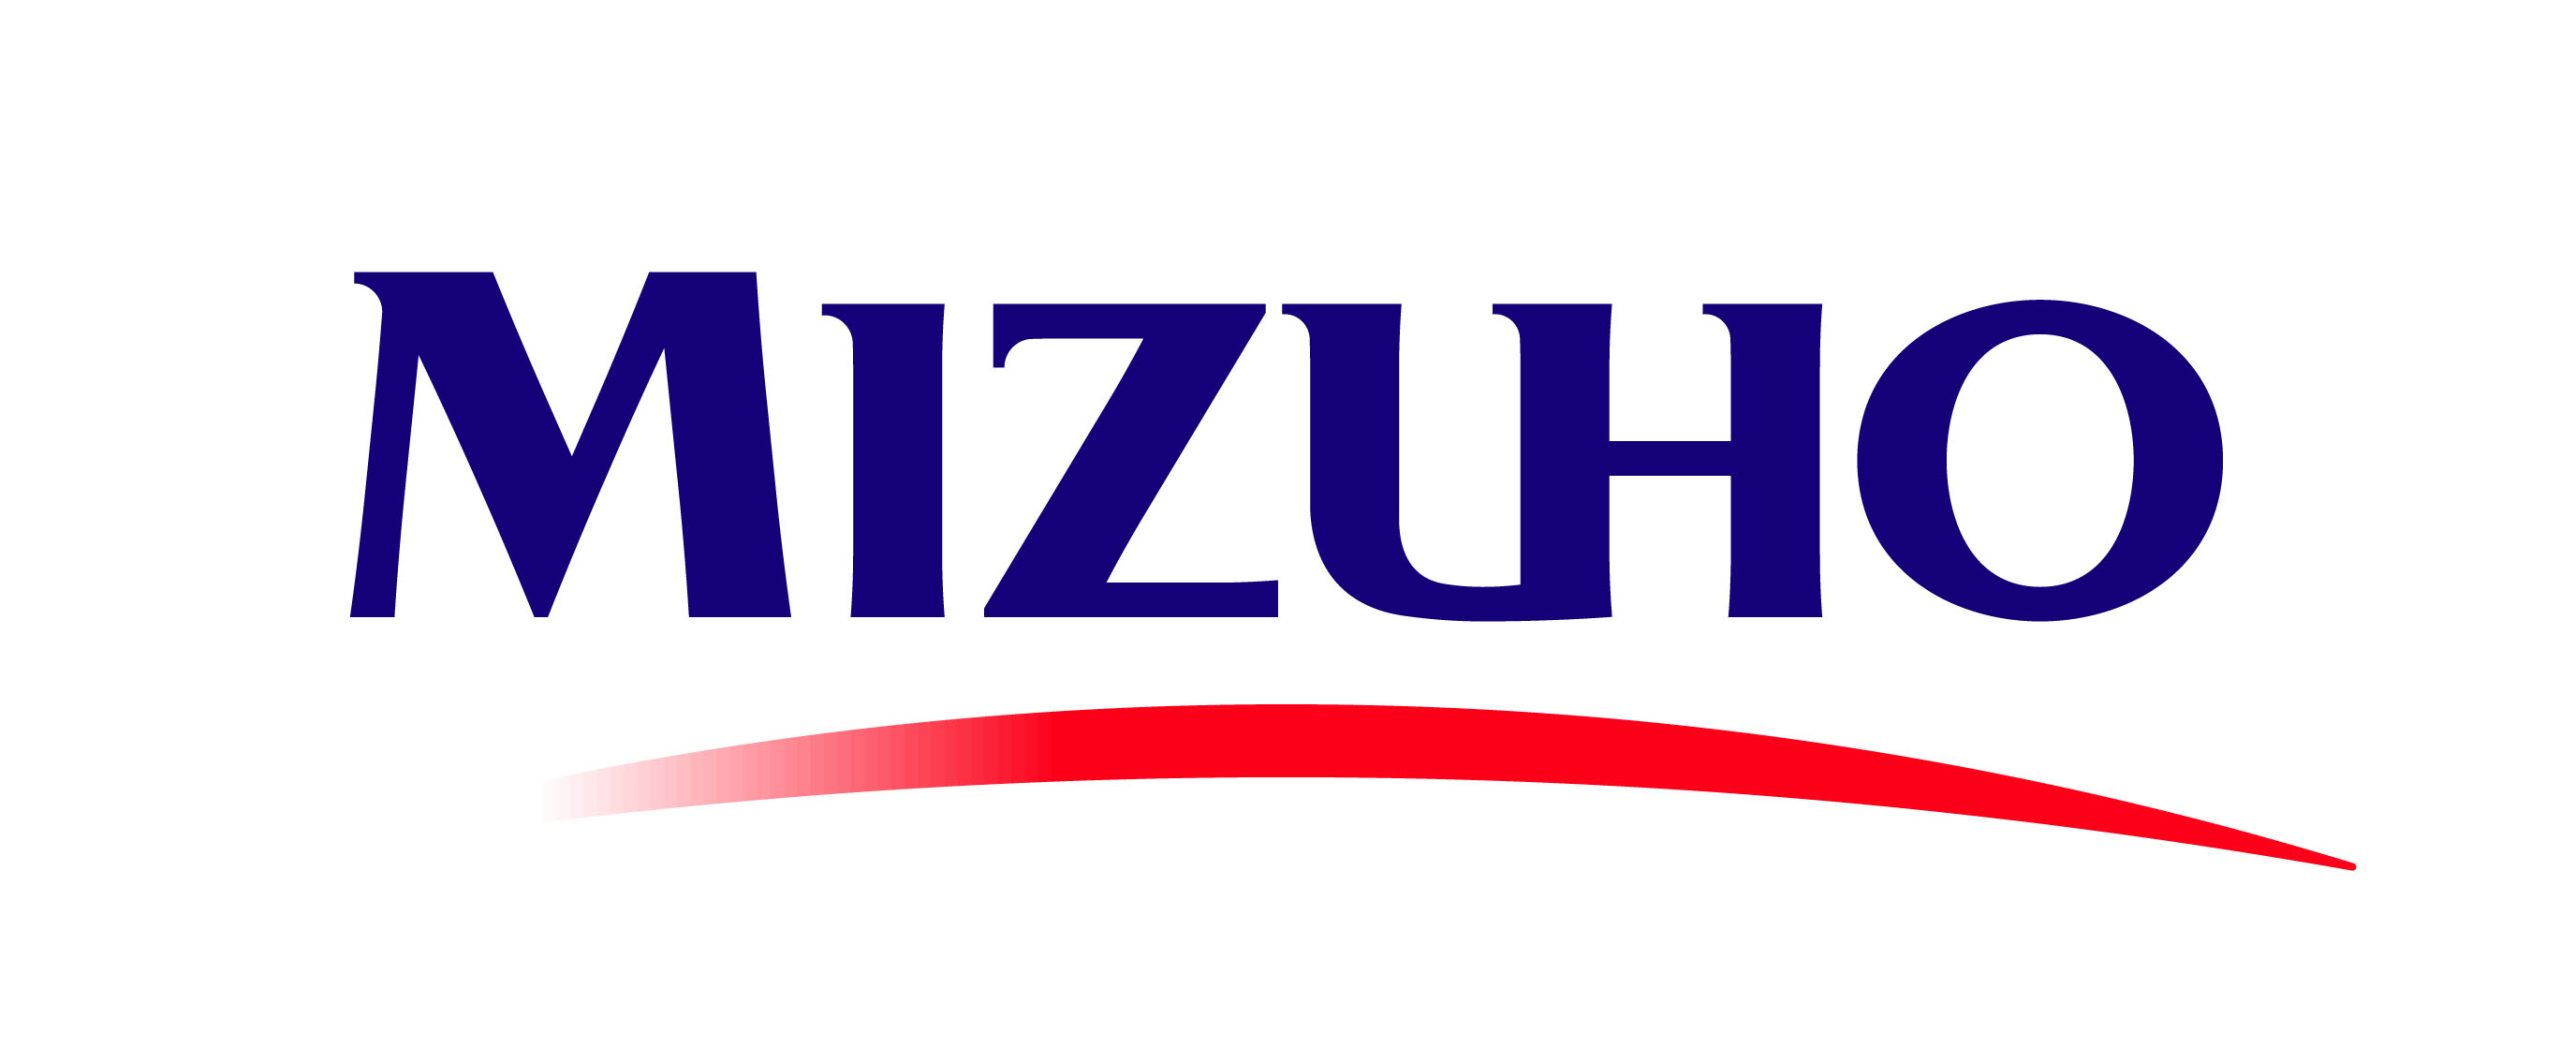 Mizuho logo